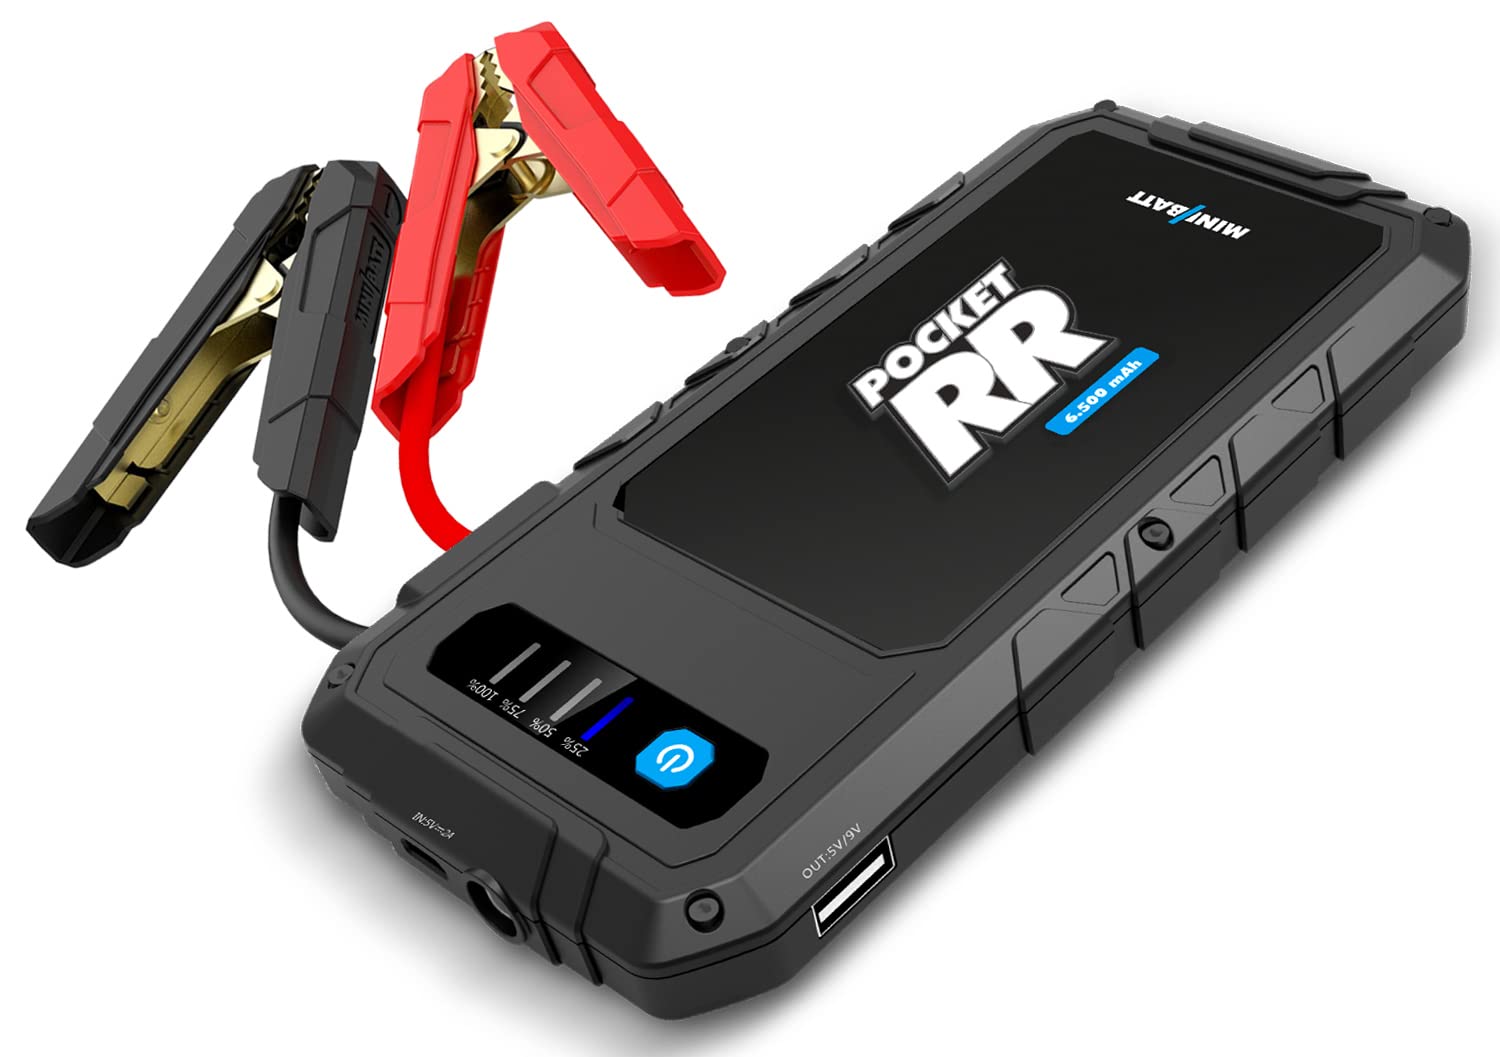 MiniBatt - Pocket RR 6.500mAH Batterie-Starthilfe, Multifunktions-Ladegerät, LED-Taschenlampe, Starter für Benzinmotoren bis 2.500 cc - Schwarz. von Minibatt